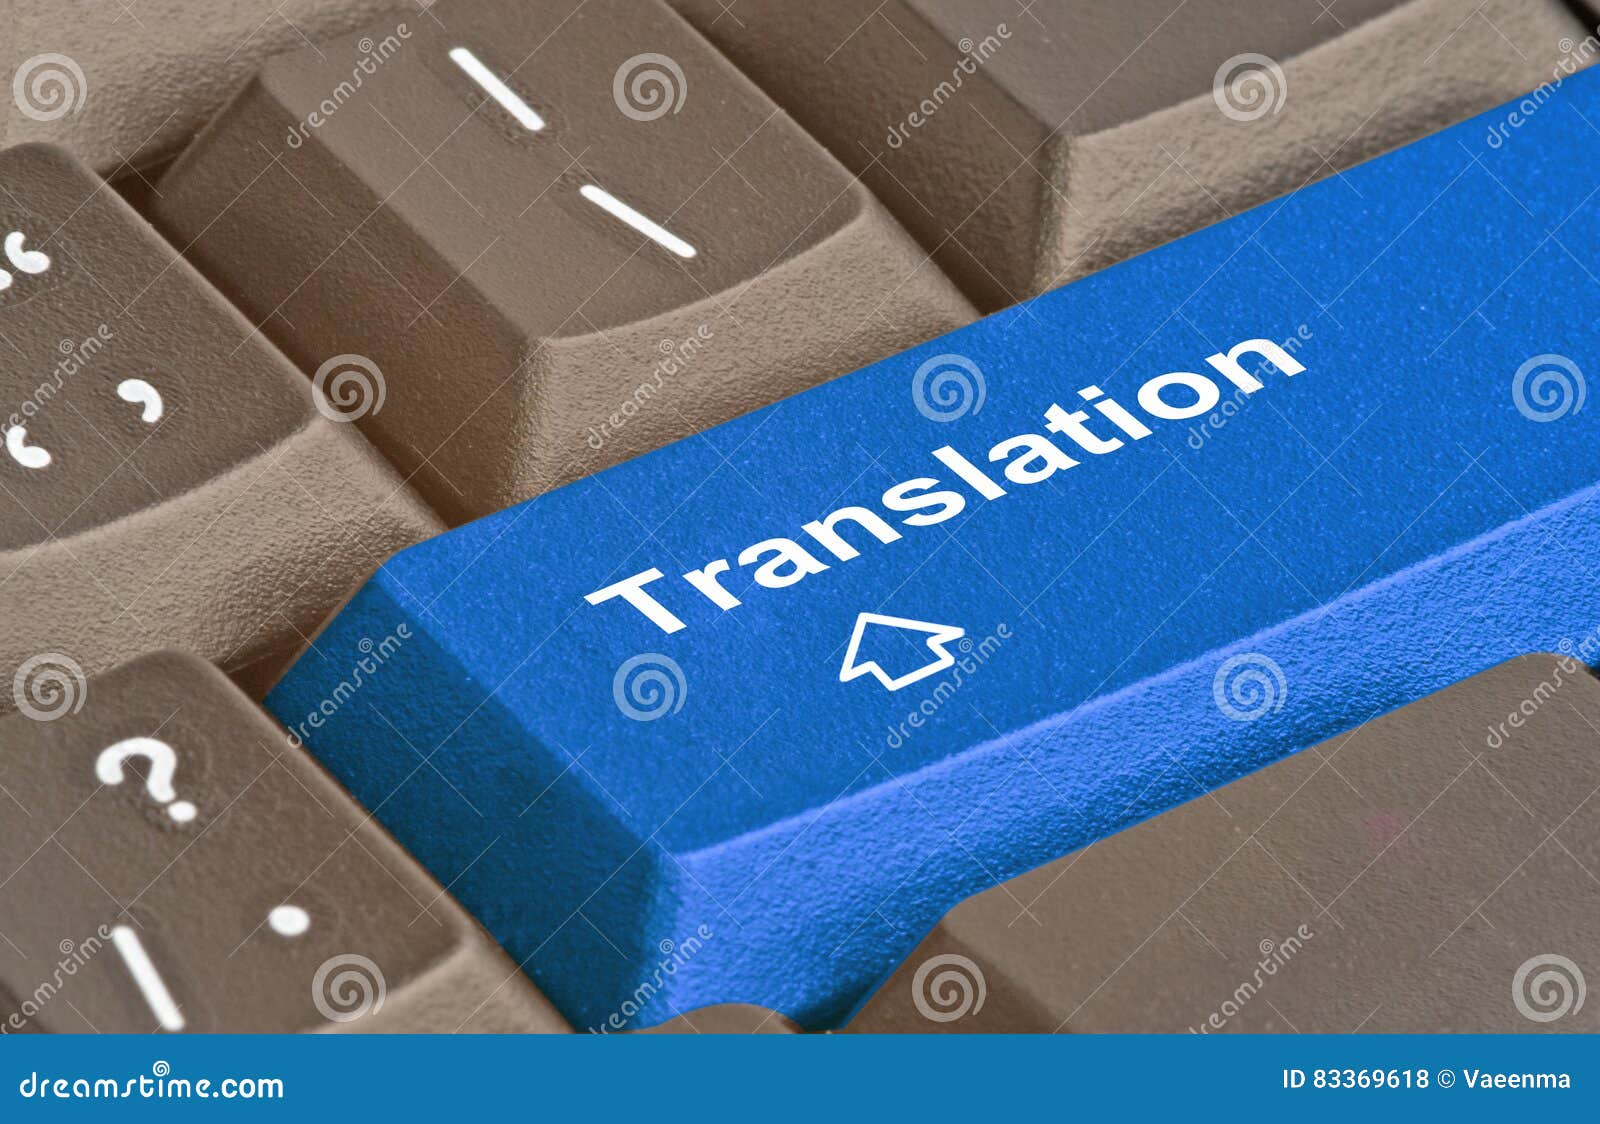 key for translation